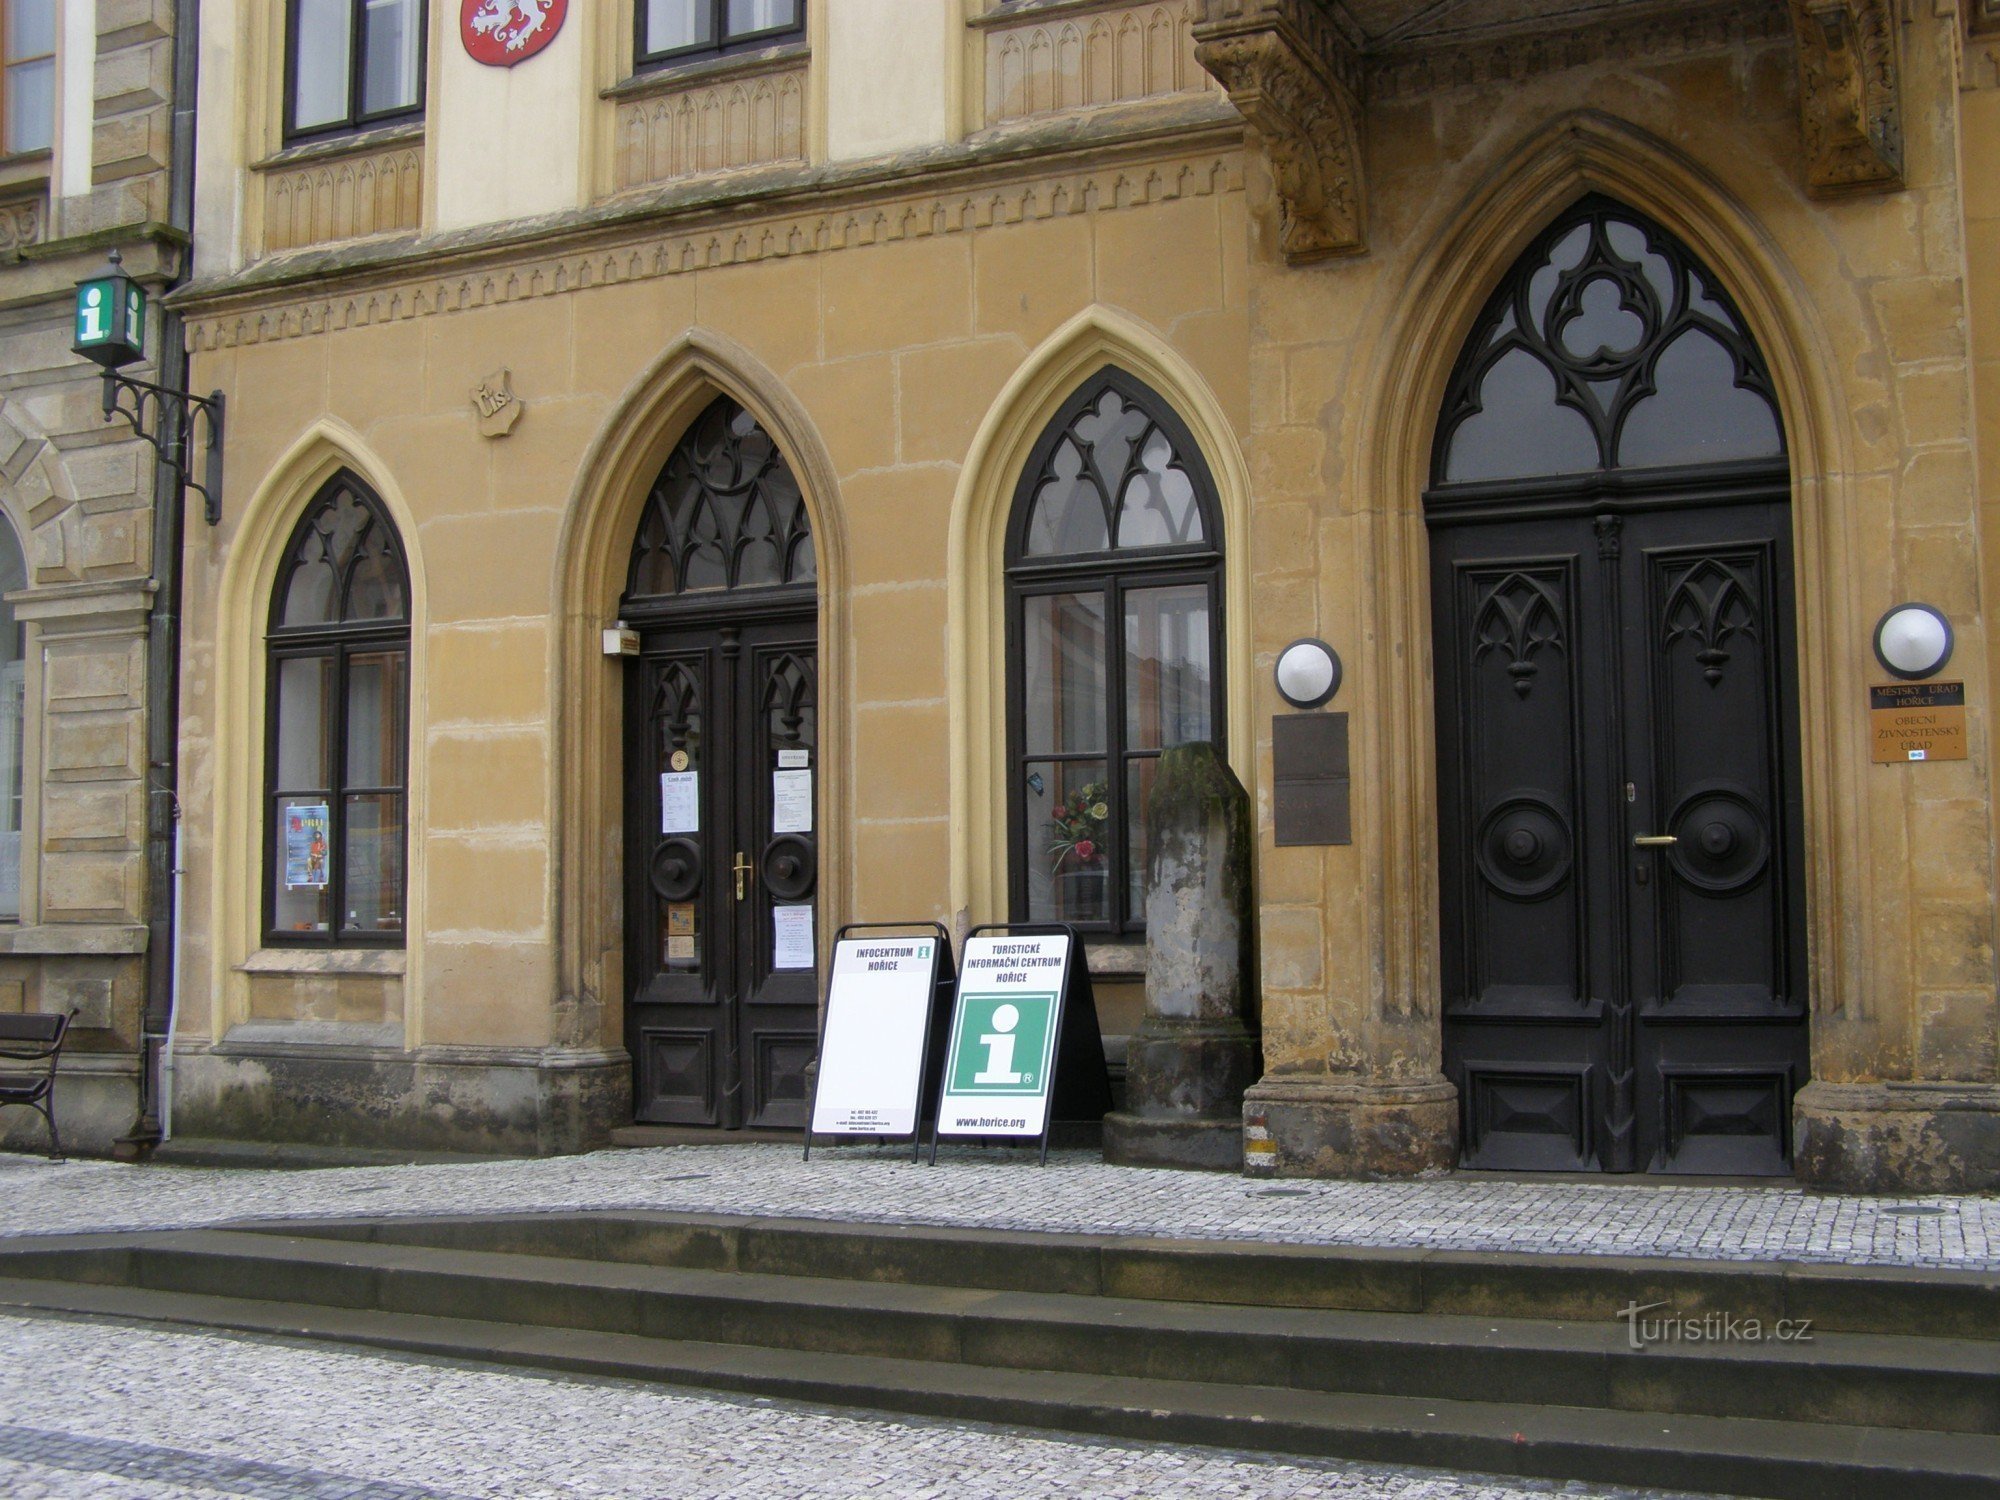 Hořice - centro informazioni